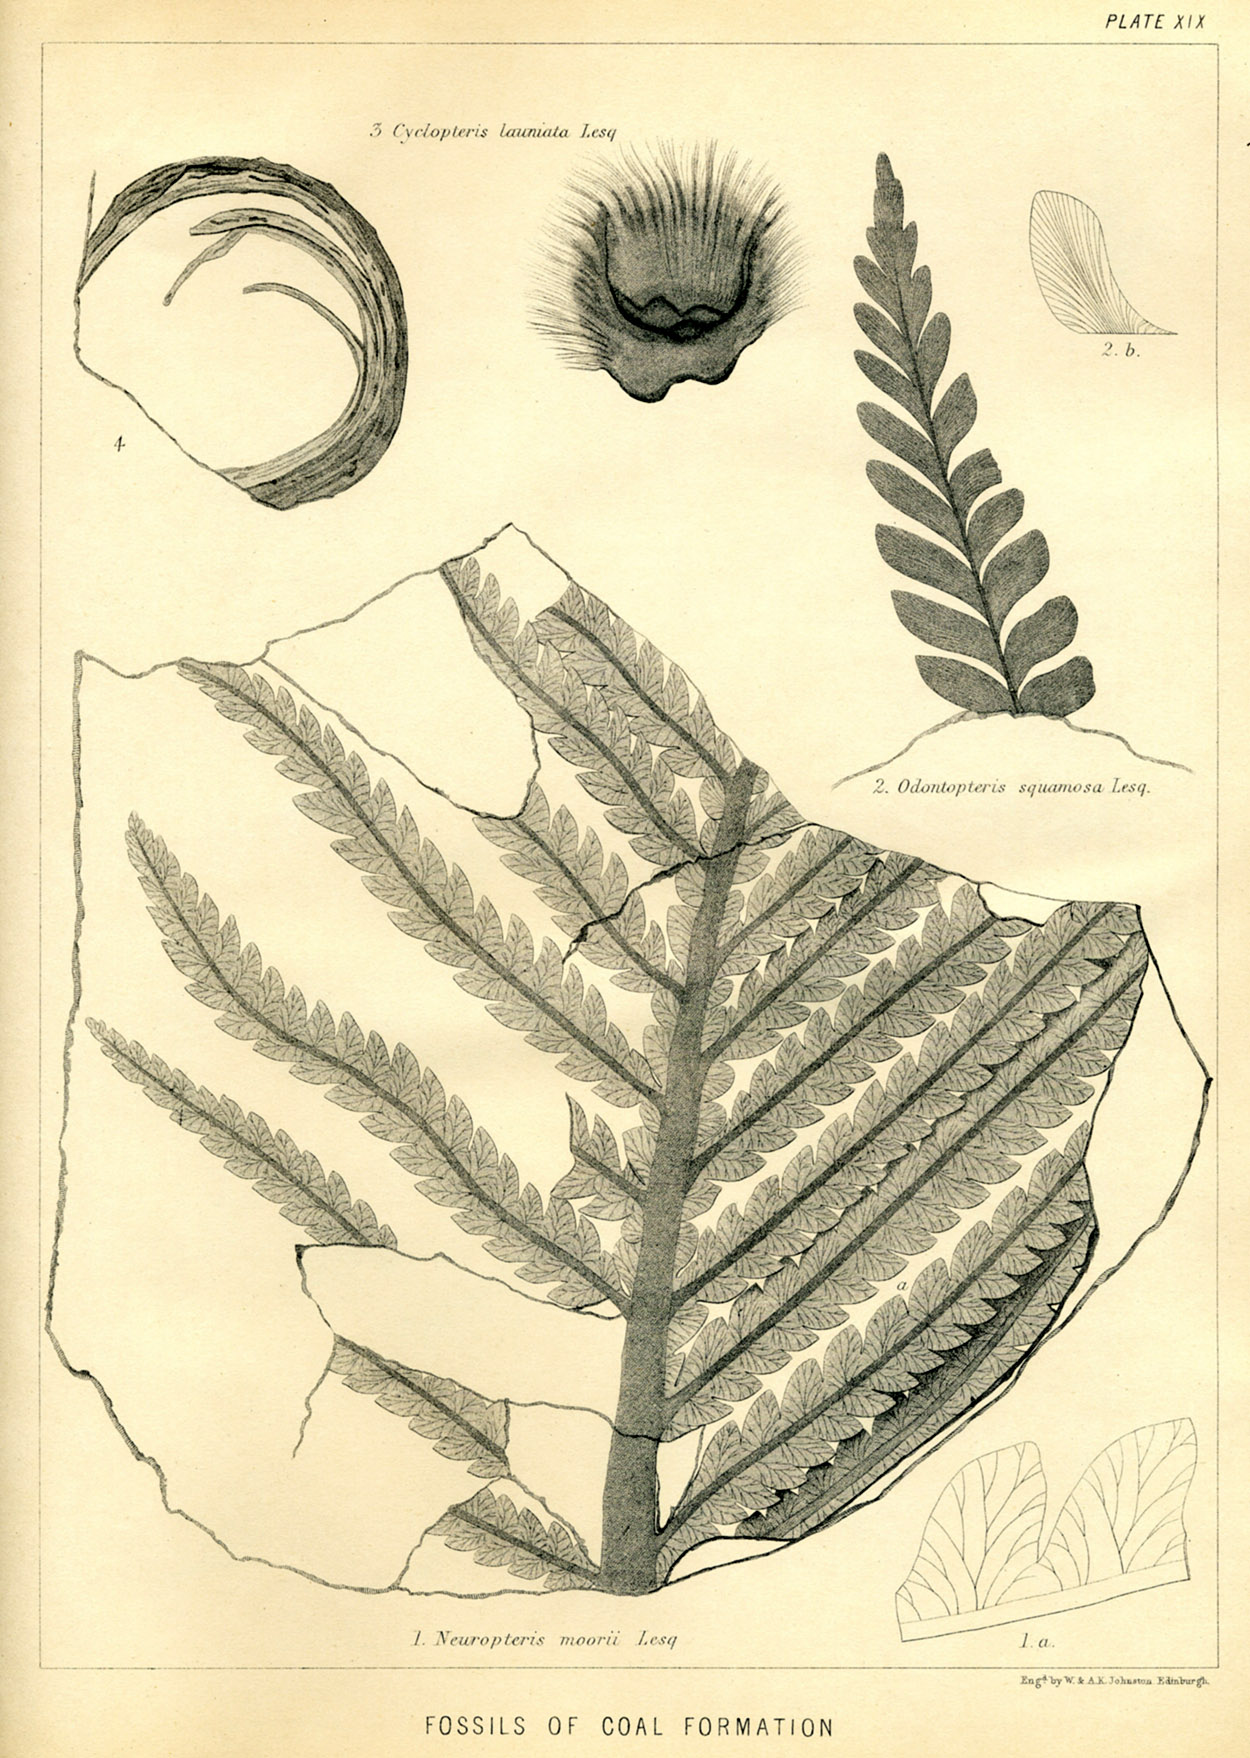 Lesquereux - 1868 - Plate XIX